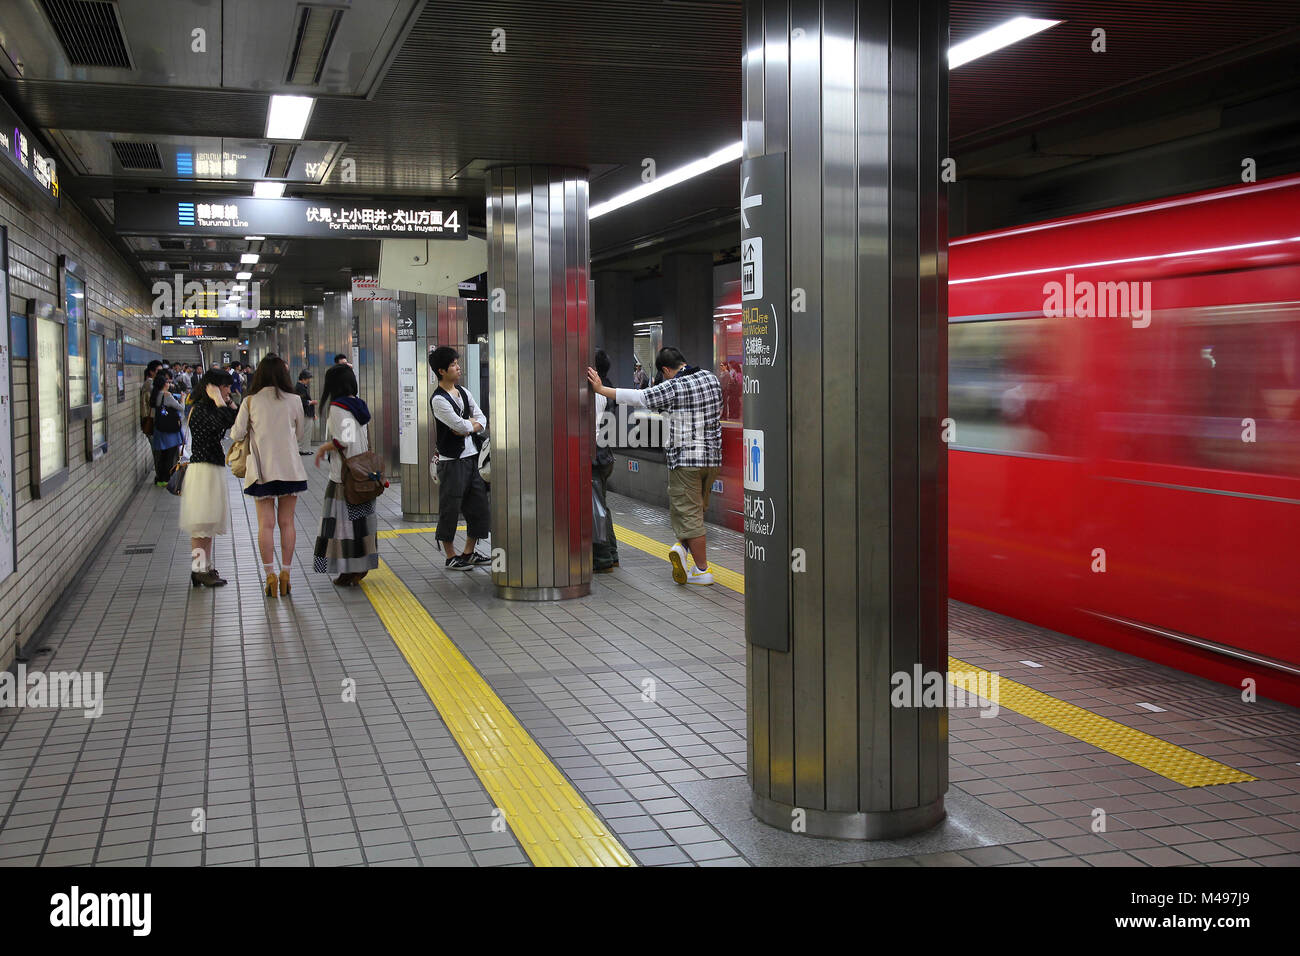 NAGOYA, GIAPPONE - 28 aprile: pendolari attendere per Nagoya alla metropolitana su Aprile 28, 2012 in Nagoya, Giappone. Nagoya alla Metropolitana è tra i top 30 più impegnativi sistemi metro wor Foto Stock